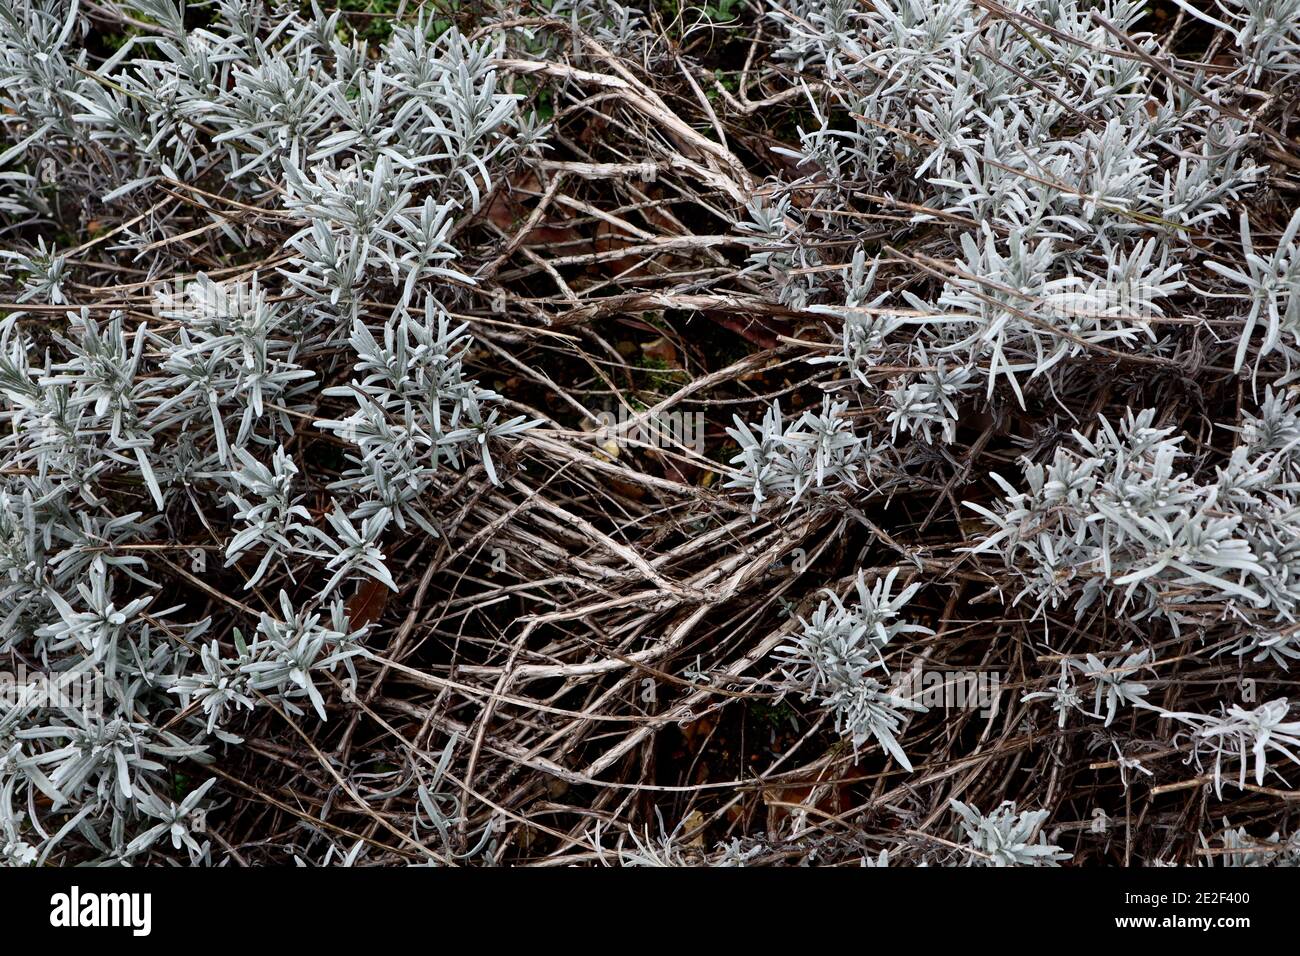 Lavanda leñosa Lavandula angustifolia, enero, Inglaterra, Reino Unido Foto de stock